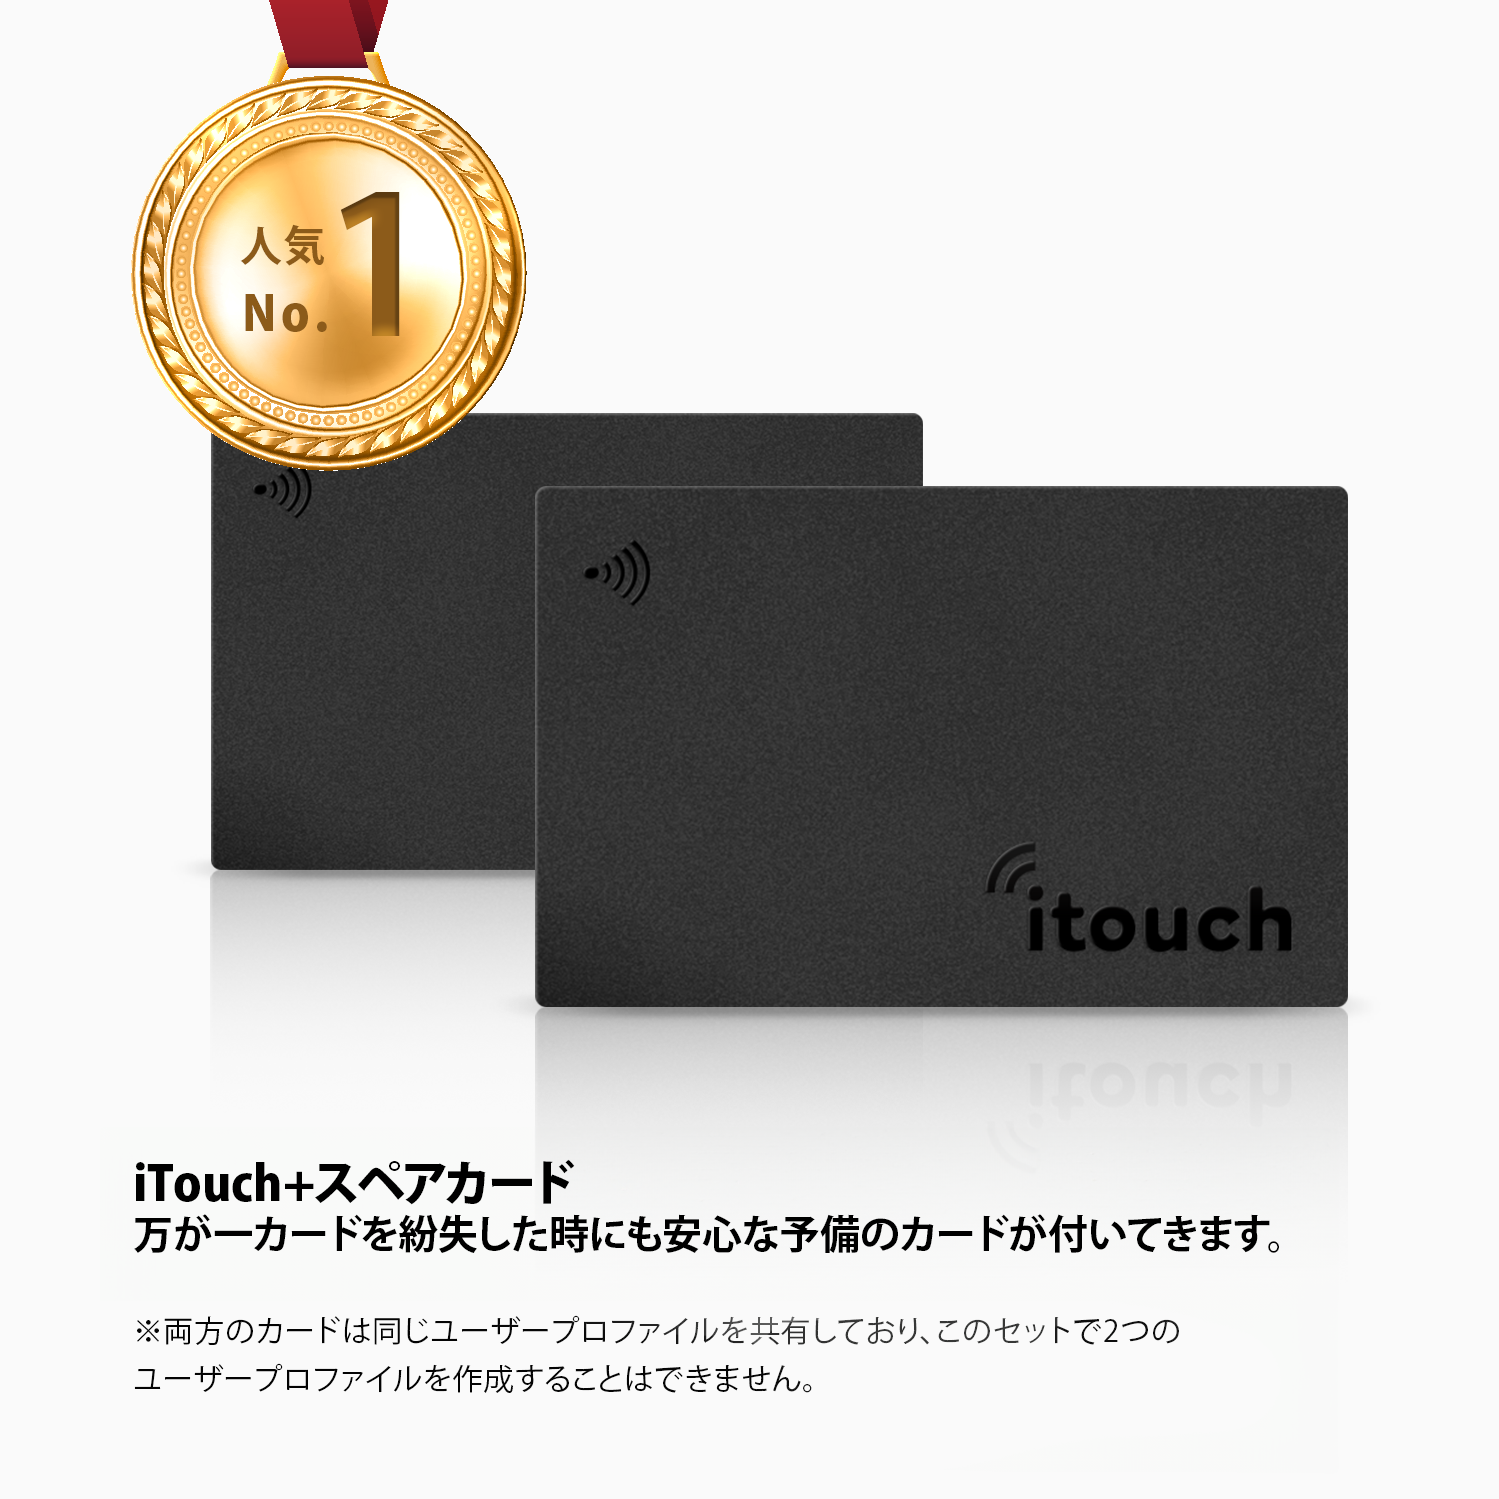 iTouch + スペアカード